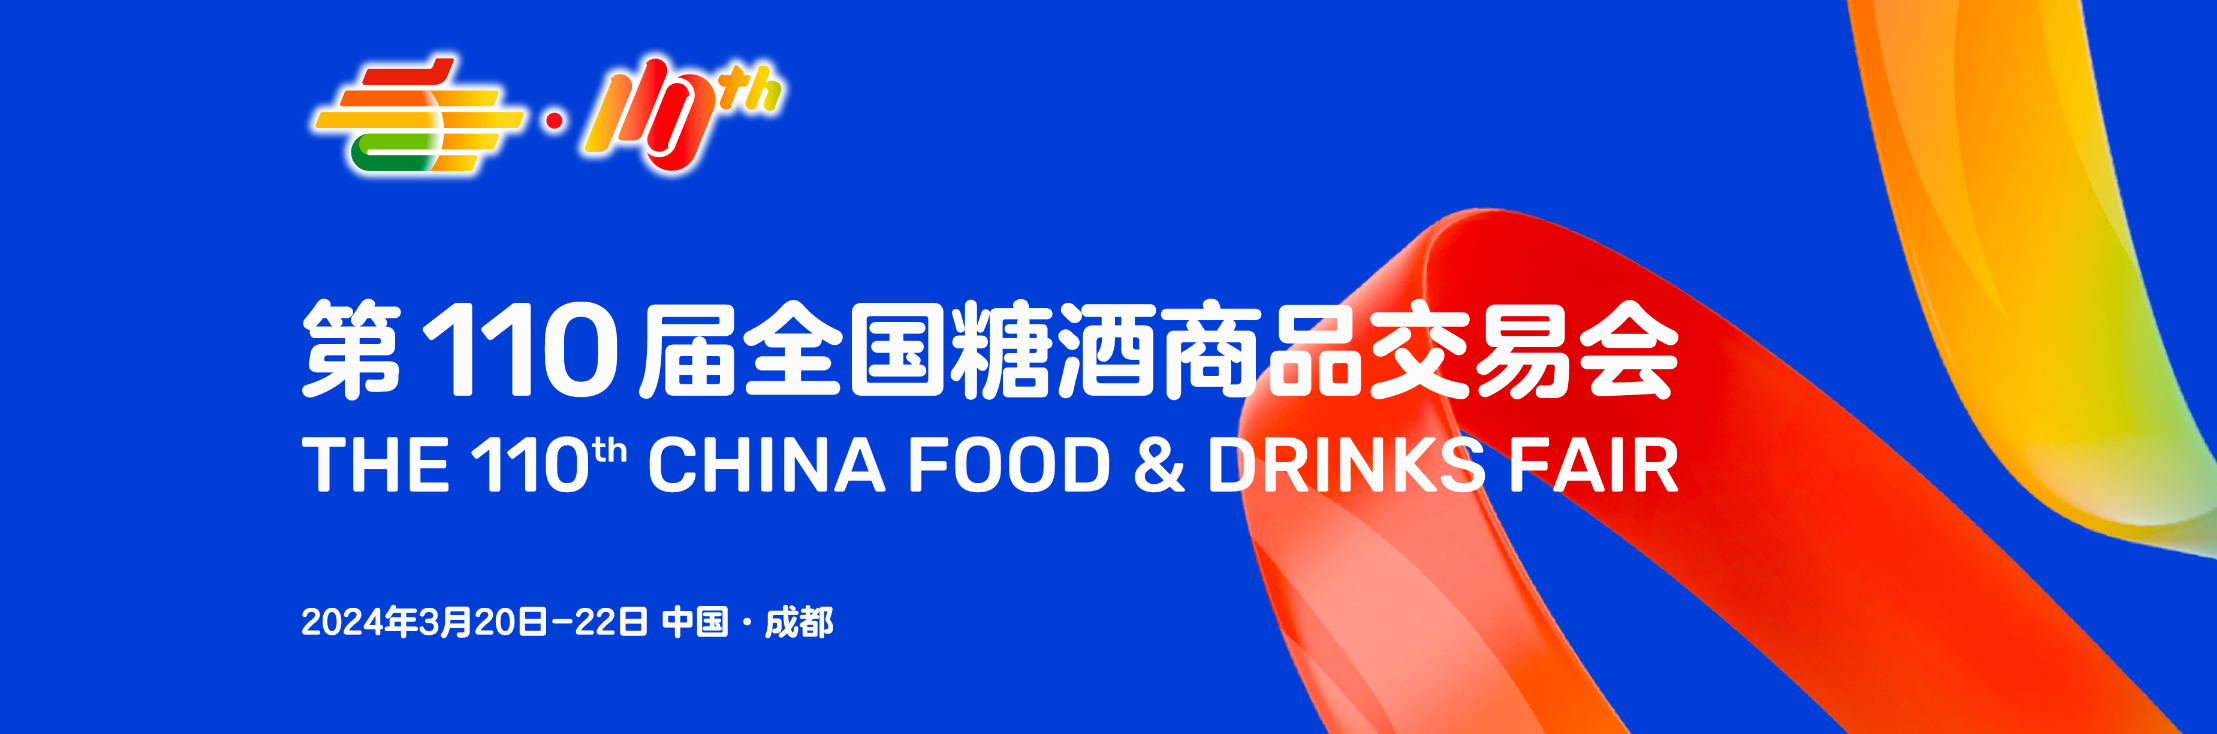 第110届全国糖酒商品交易会——中国食品酒类行业风向标